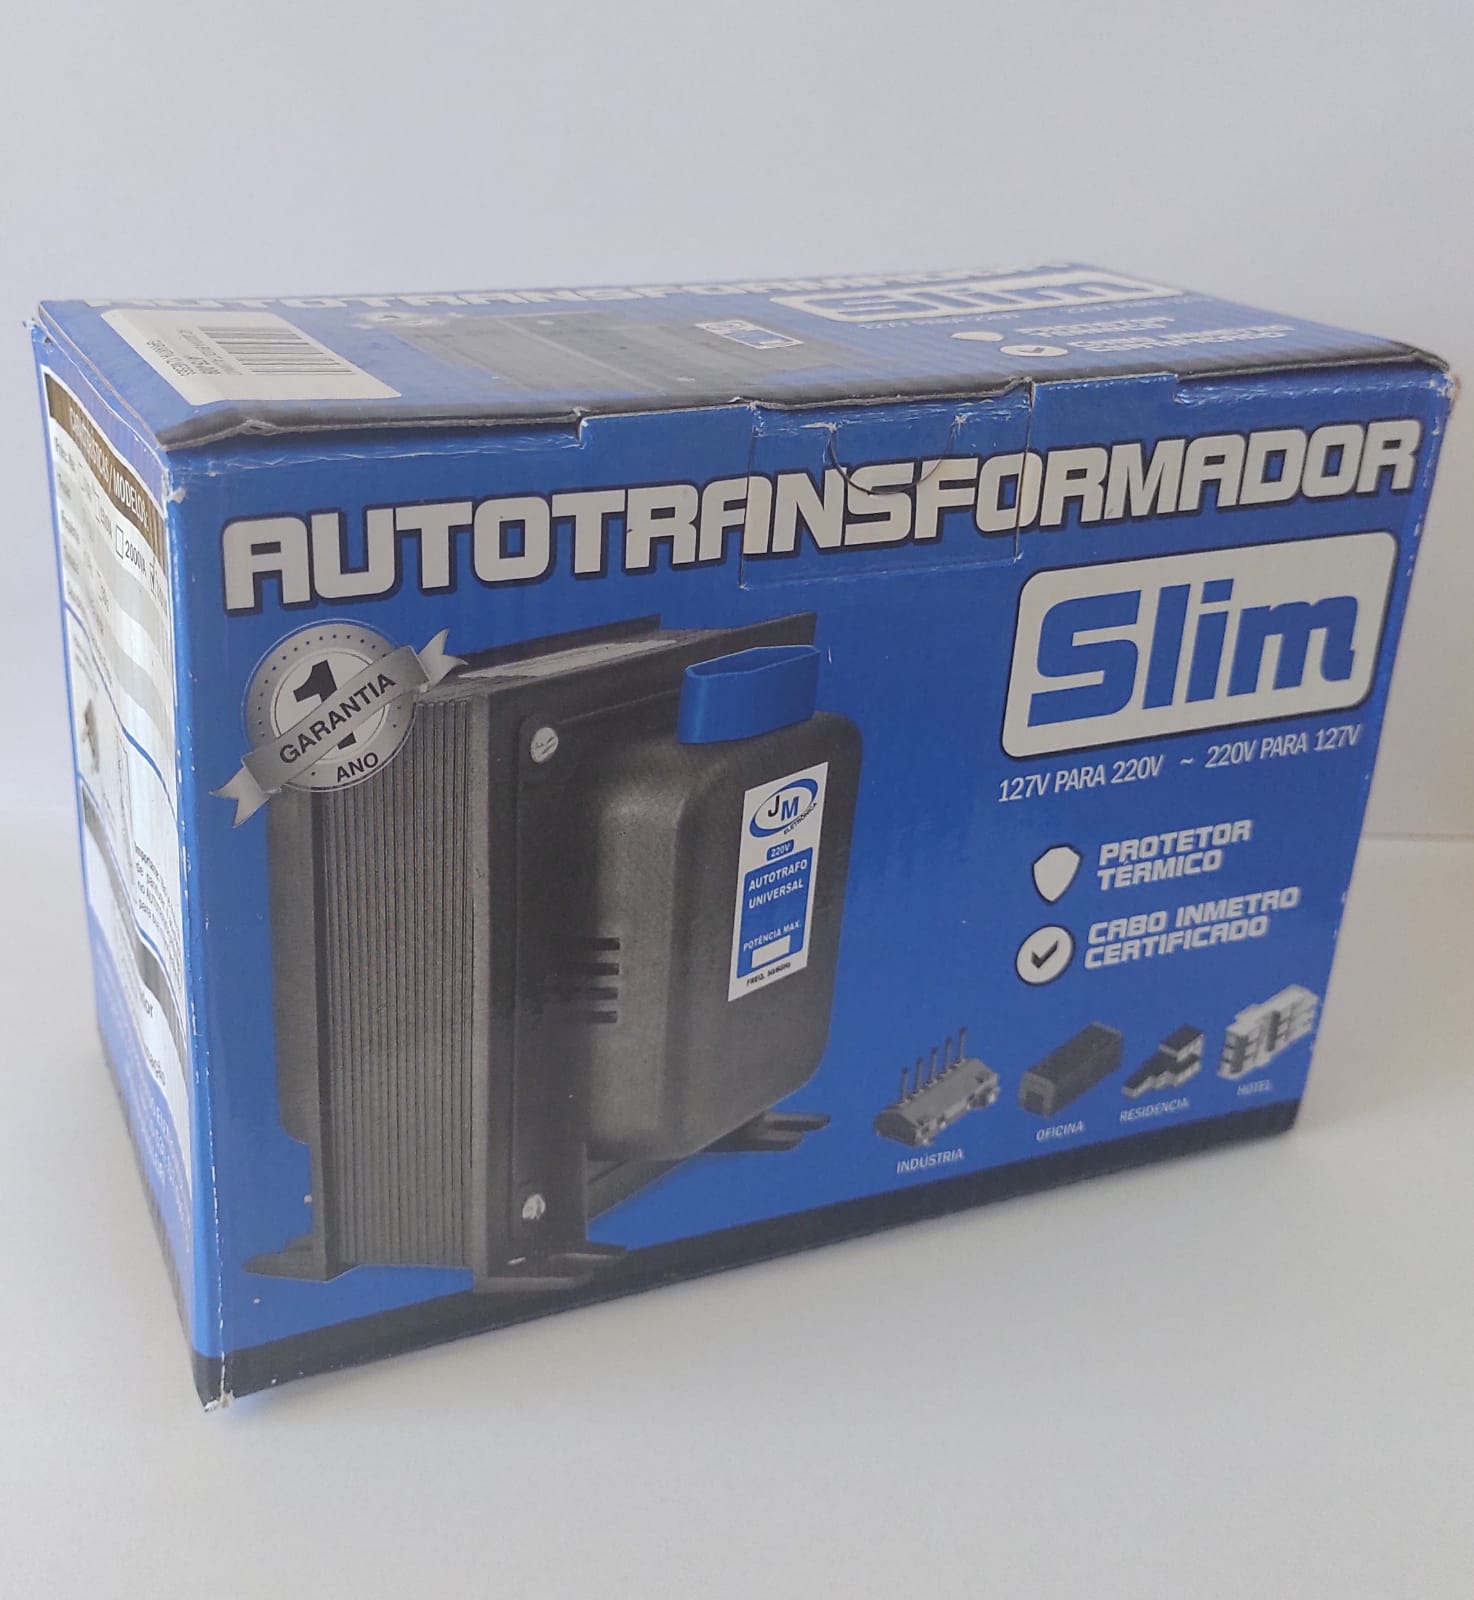 Autotransformador 2000VA Slim automático 127V para 220V e 220V para 127V